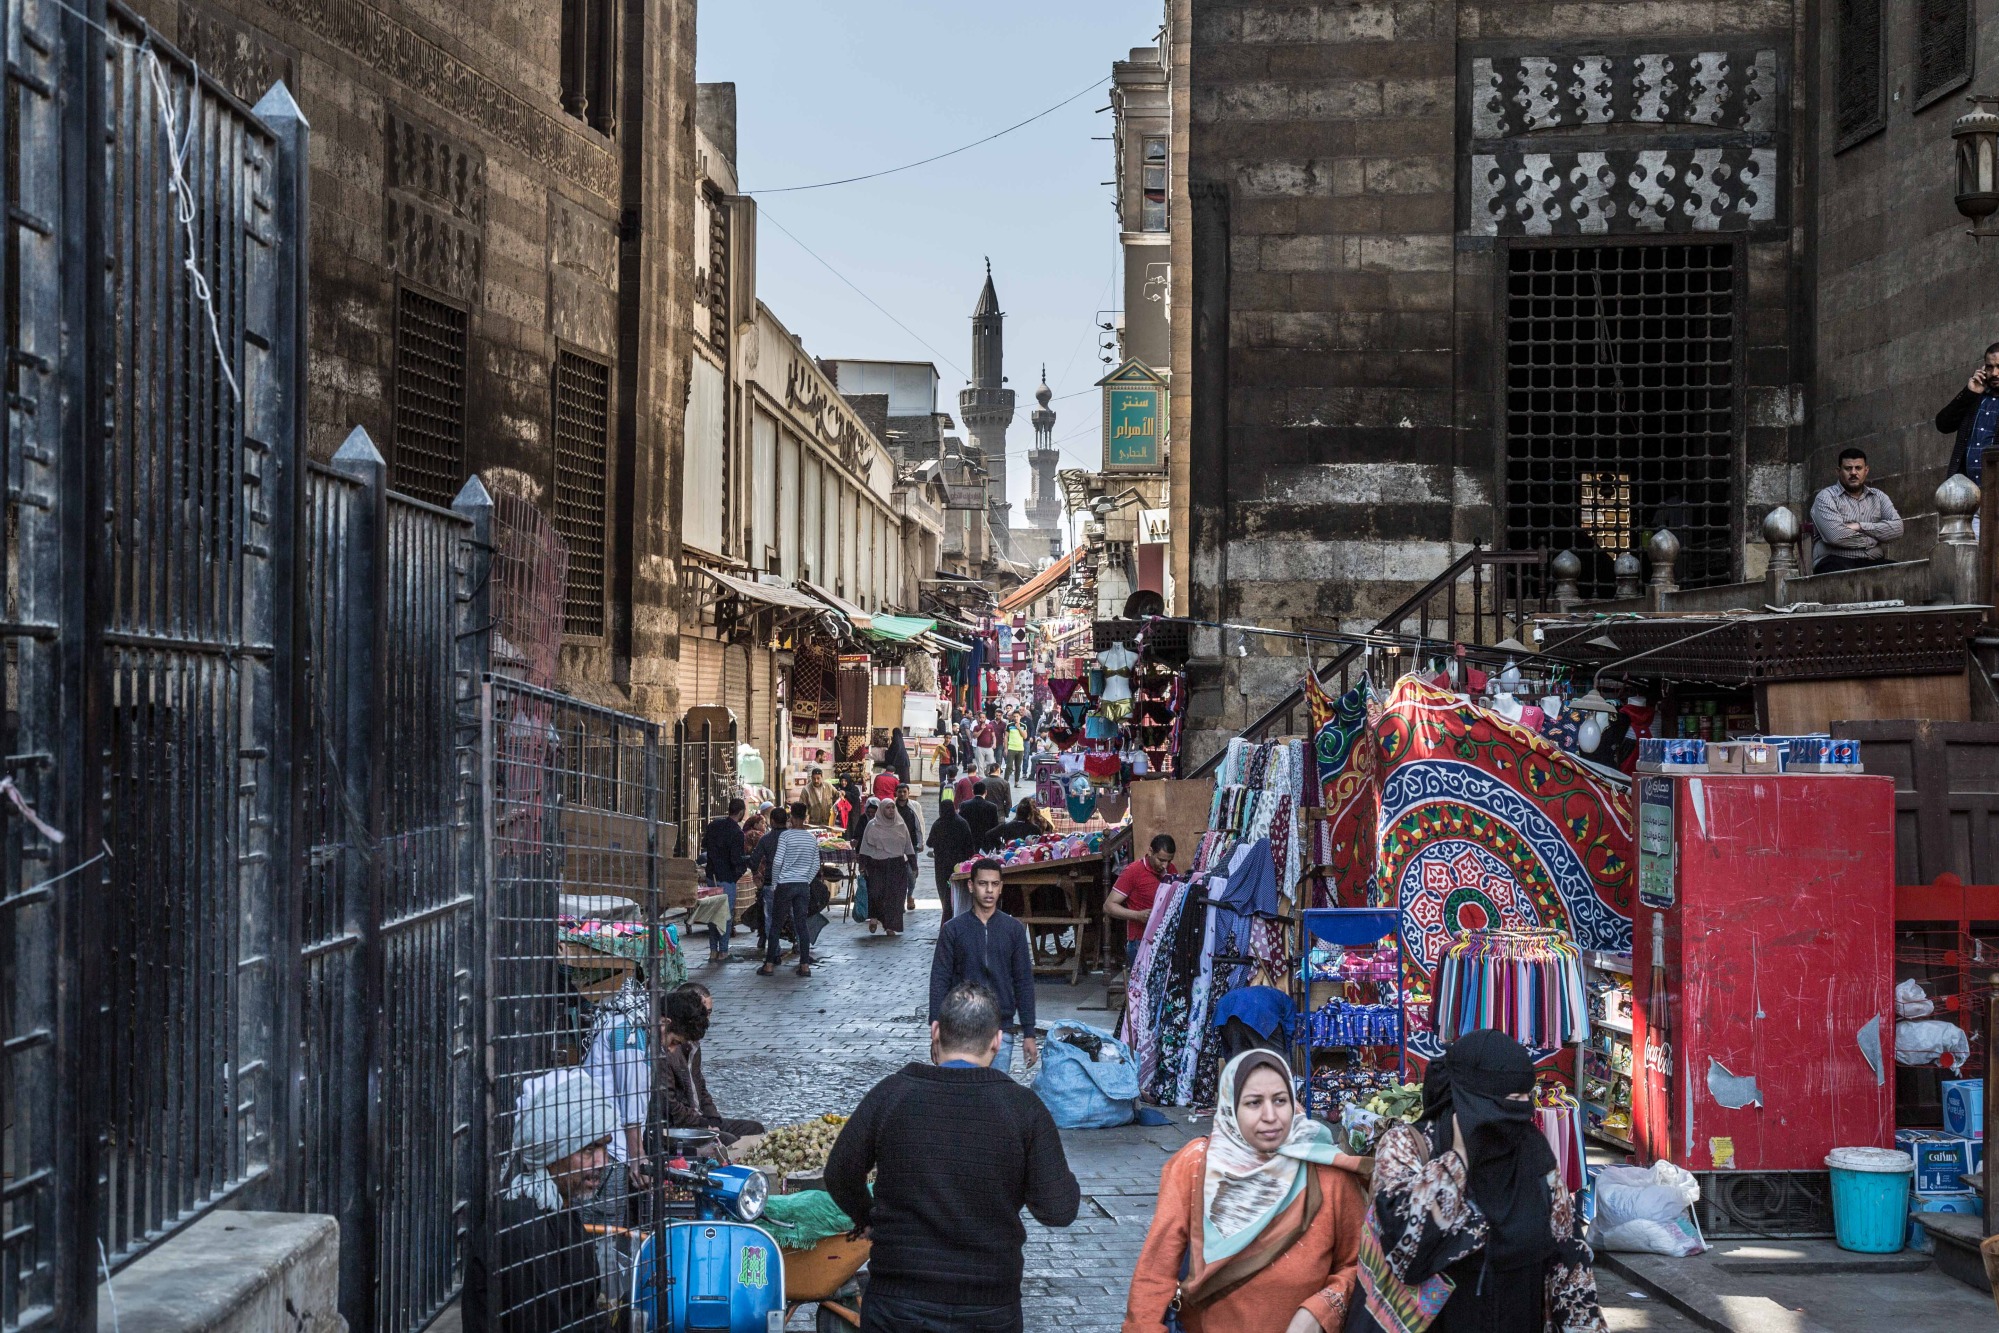 Pedestrians pass among market stalls in Cairo.